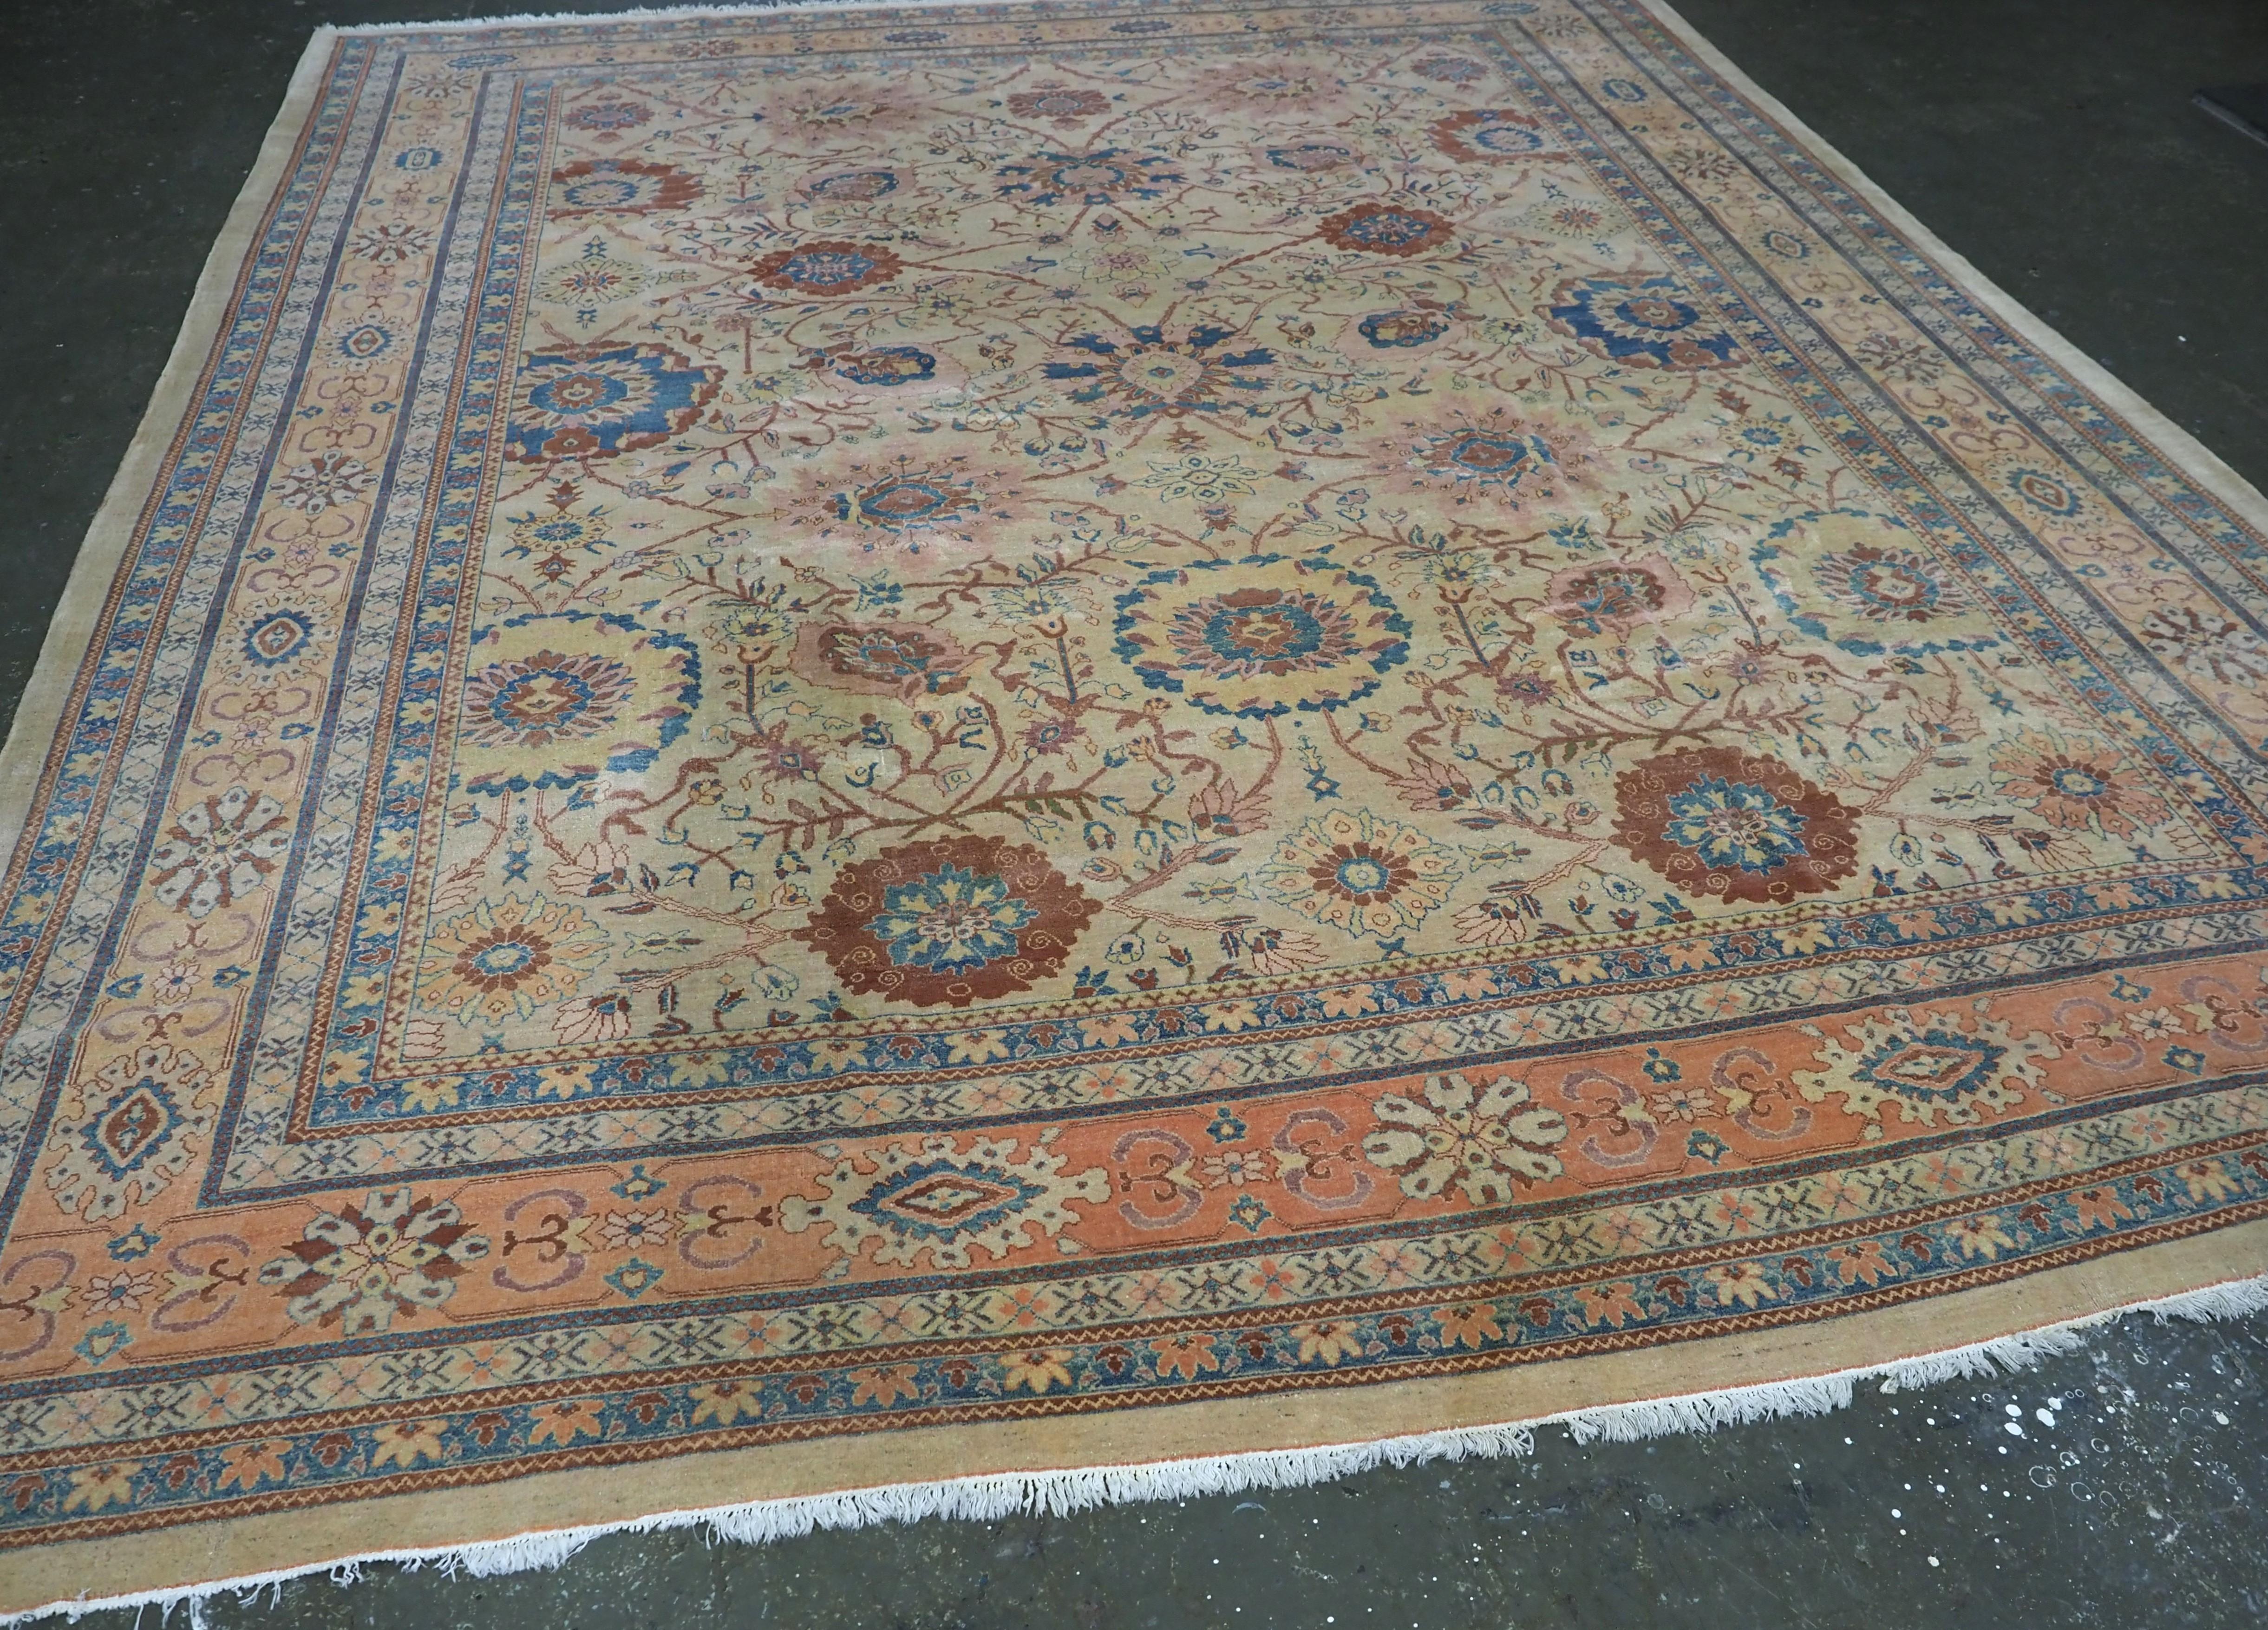 Größe: 12ft 7in x 10ft 8in (383x 325cm)

Ein ausgezeichnetes Beispiel für einen Vintage-Teppich von Ziegler in einer sanften Farbpalette.

Etwa 30 Jahre alt.

Der Teppich ist handgewebt mit einem ansprechenden persischen Blumenvasenmuster, das von